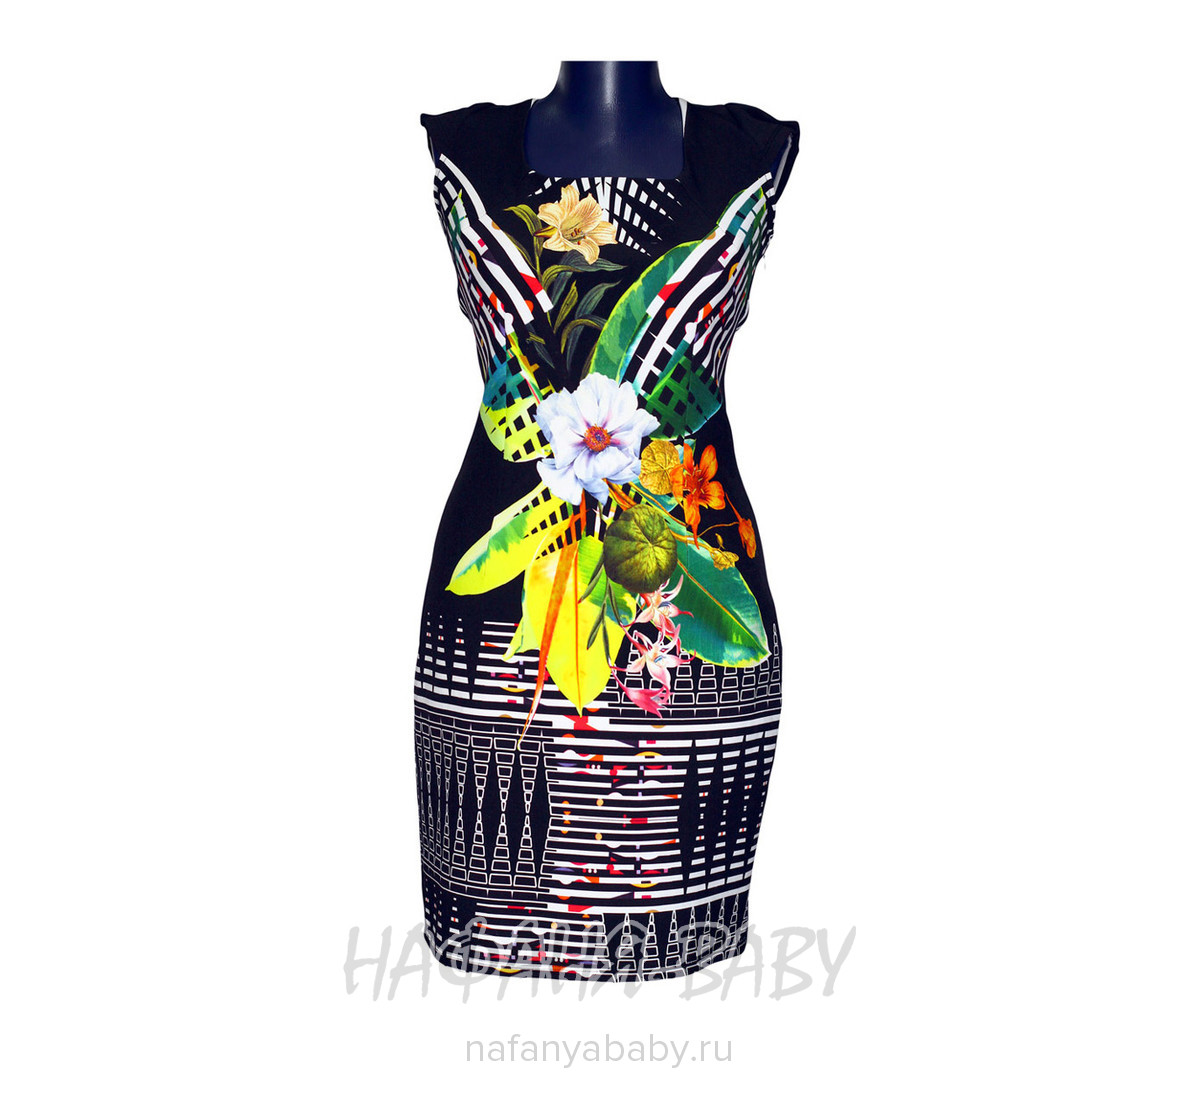 Платье BISCUIT, купить в интернет магазине Нафаня. арт: 91841.